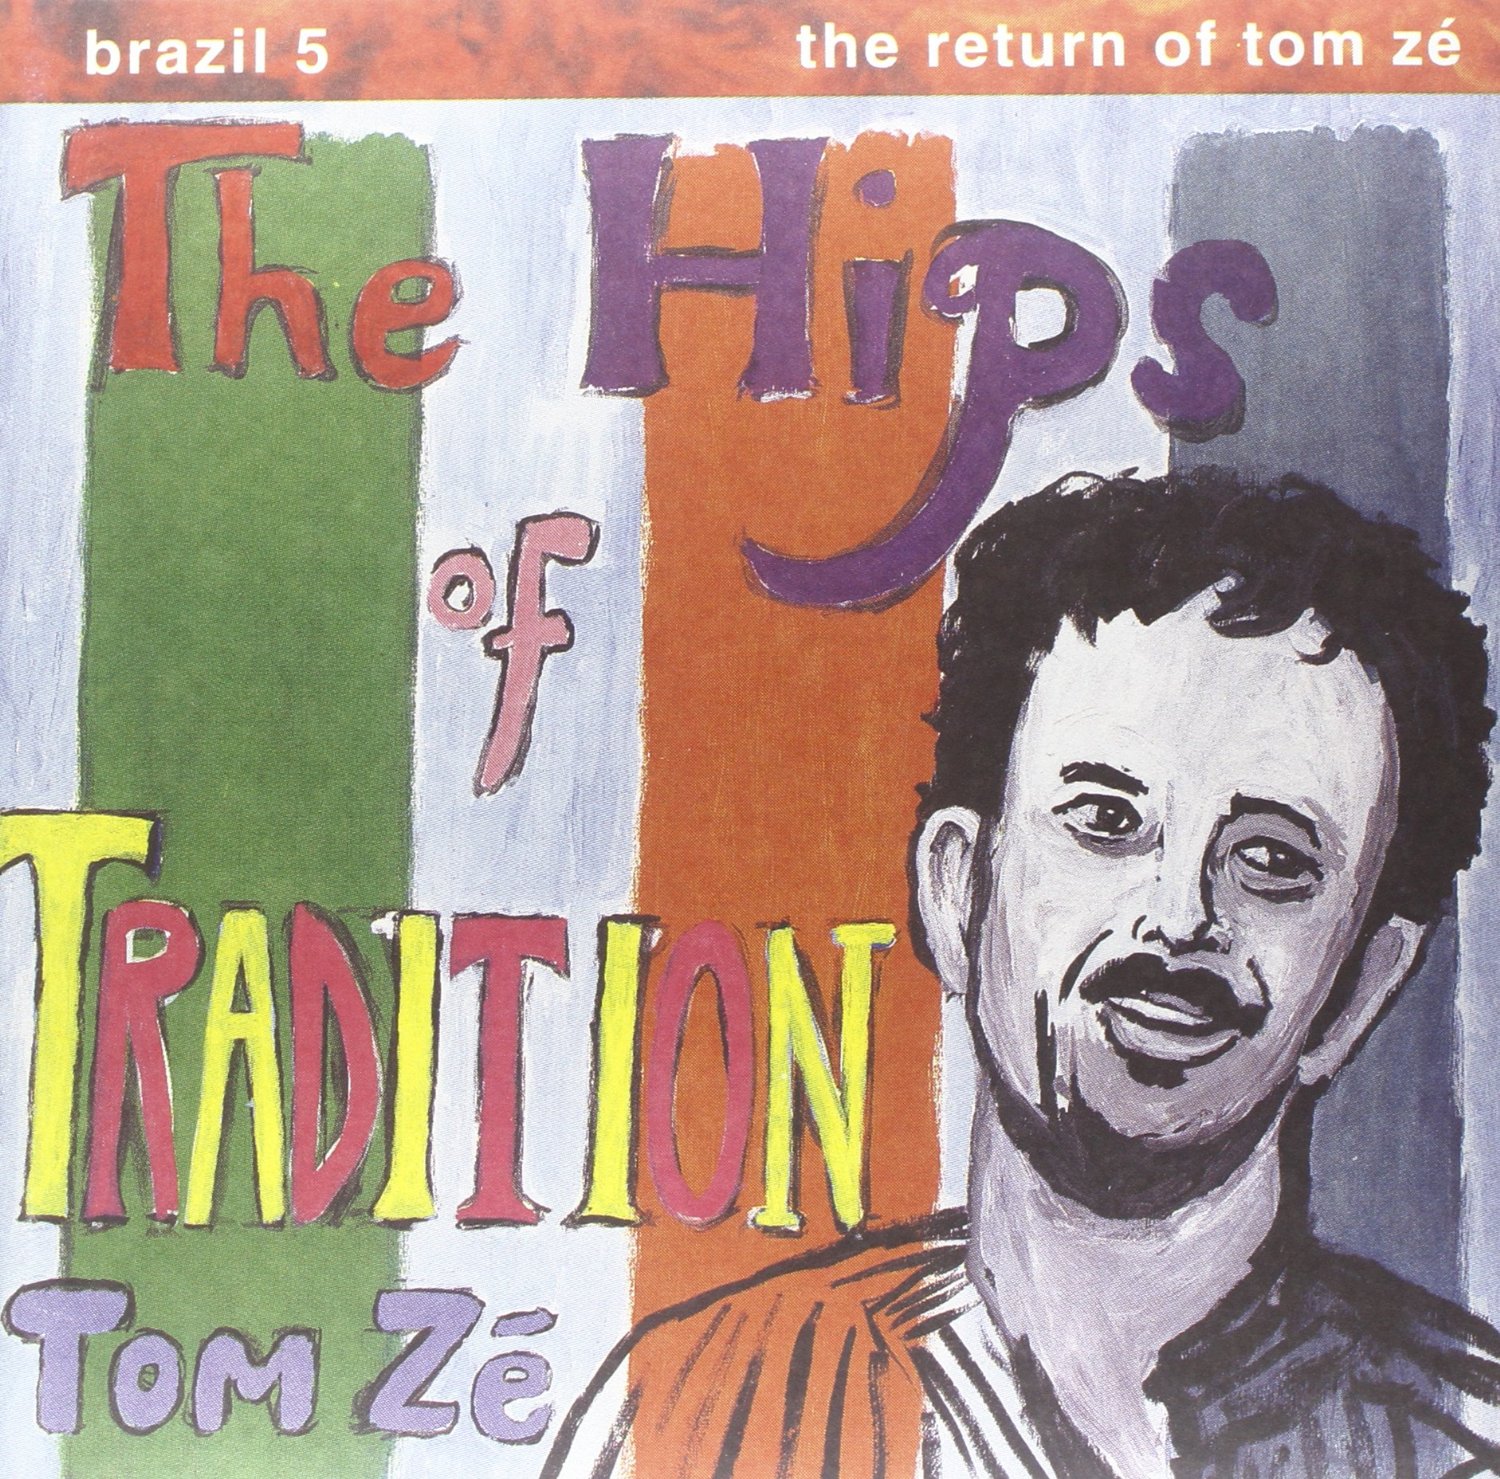 Vinile Tom Ze' - The Hips Of Tradition -the Return NUOVO SIGILLATO, EDIZIONE DEL 25/08/2014 SUBITO DISPONIBILE